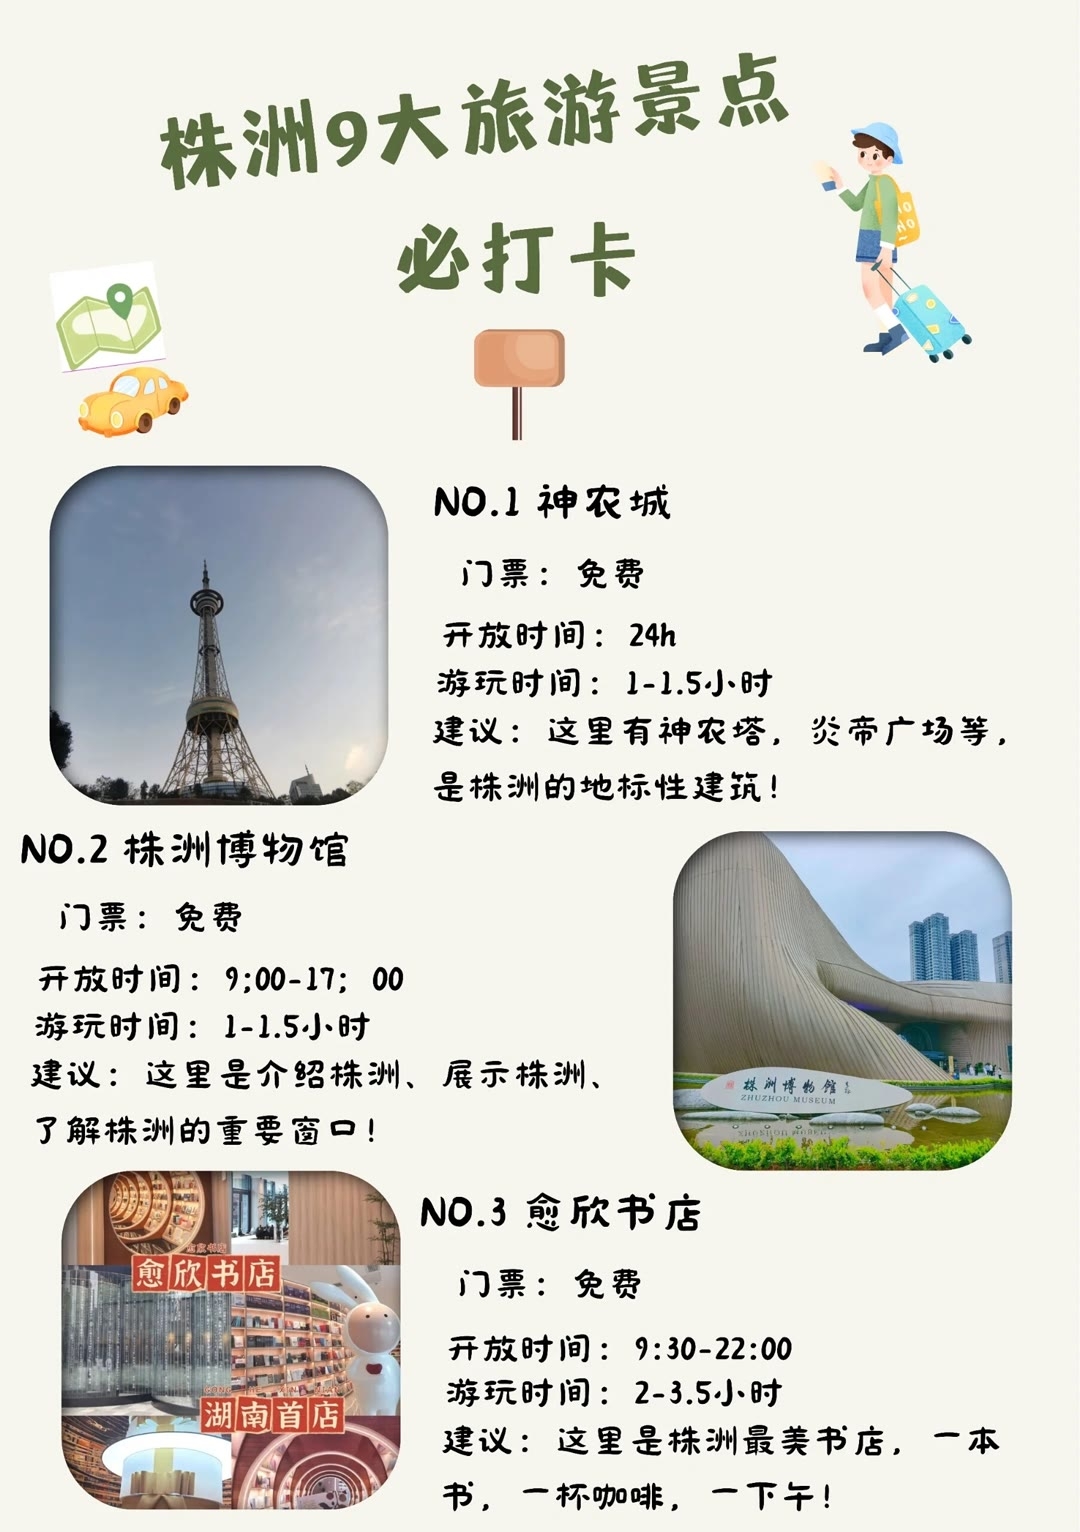 株洲好玩地方推荐 株洲是中国湖南省的一个城市，拥有许多有趣的旅游景点和活动。以下是一些推荐的株洲好玩